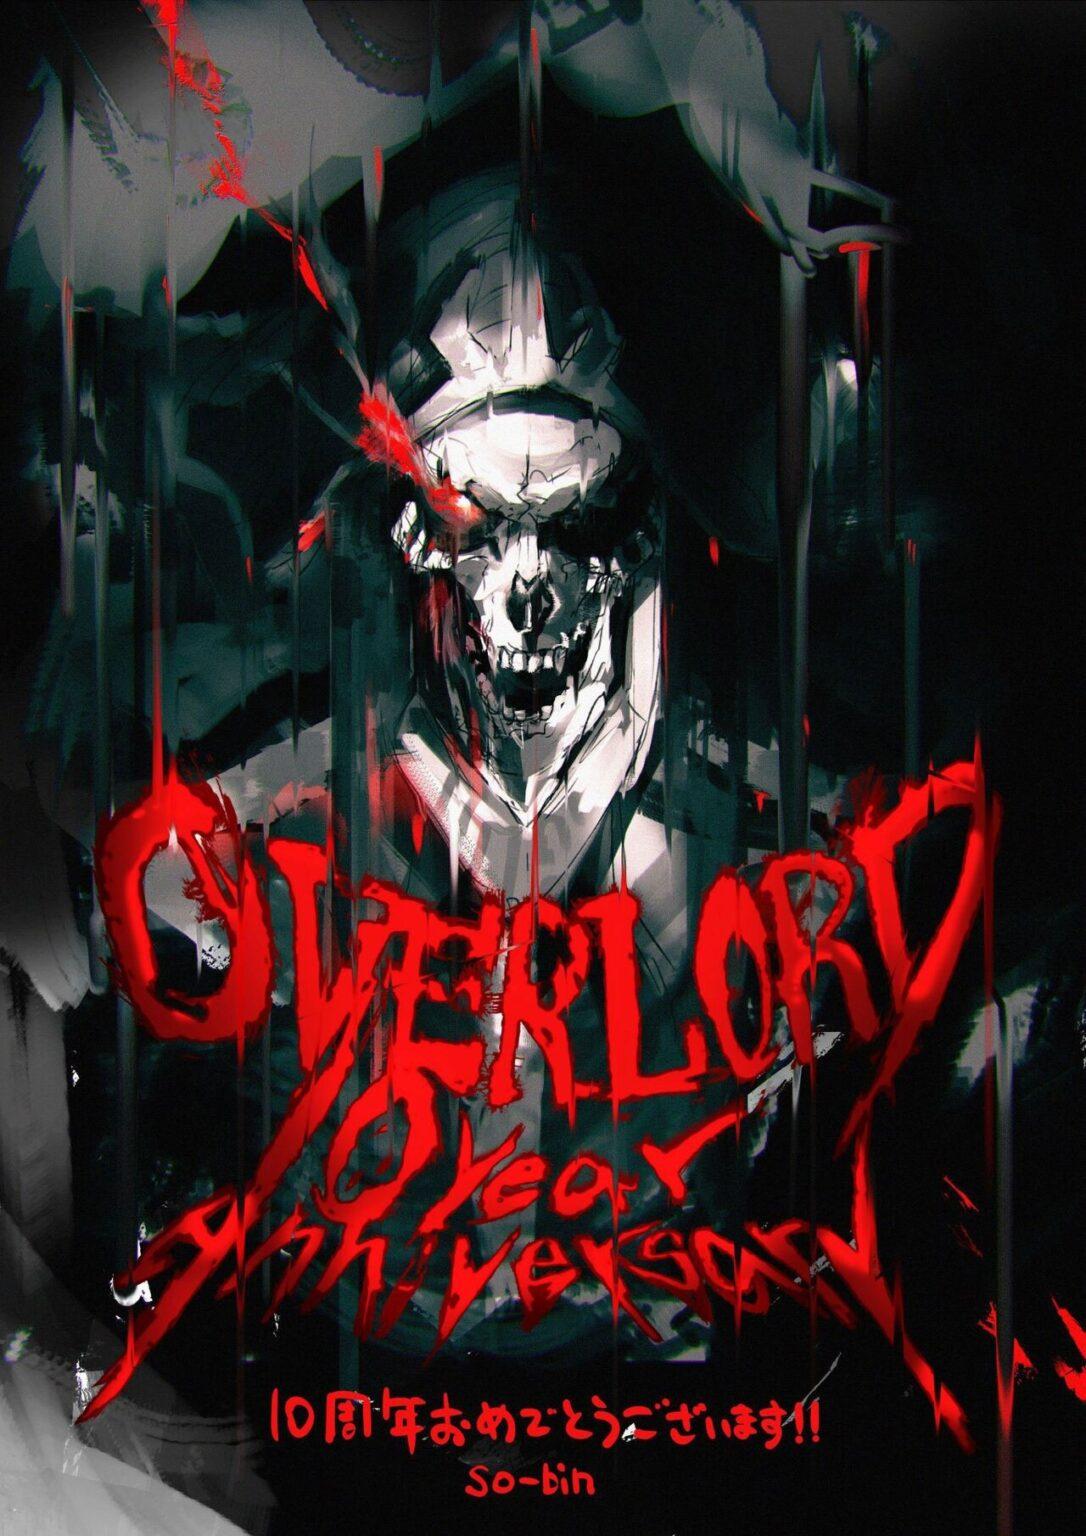 Overlord: 4ª temporada estreia em 2022